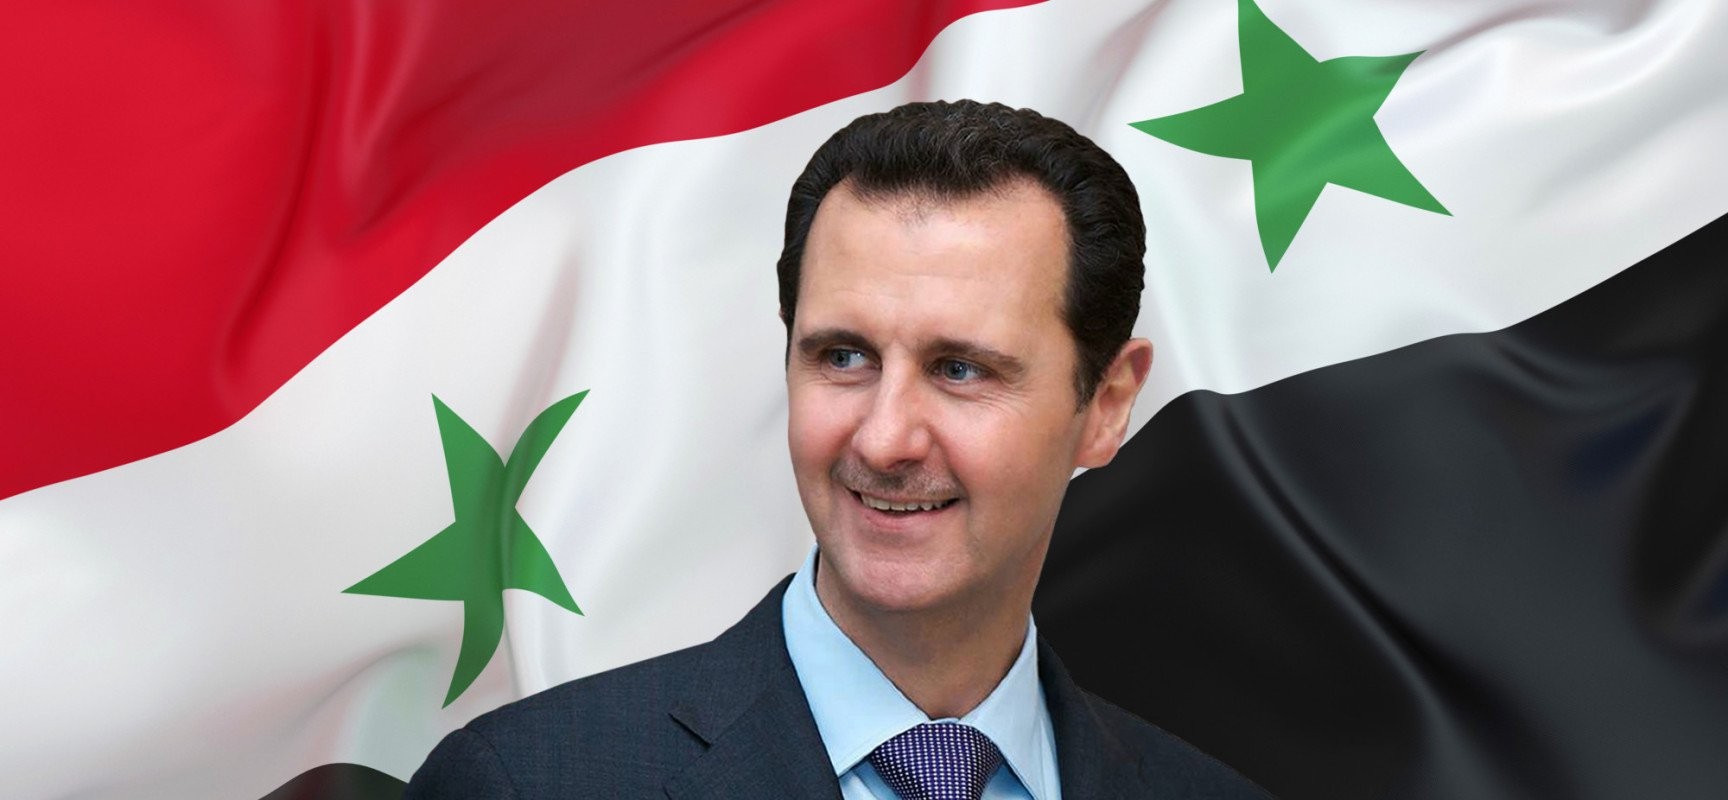 Assad e la guerra civile in Siria: breve storia su cosa sta accadendo. • Piazza Armerina - Il Mosaico - Notizie e ...